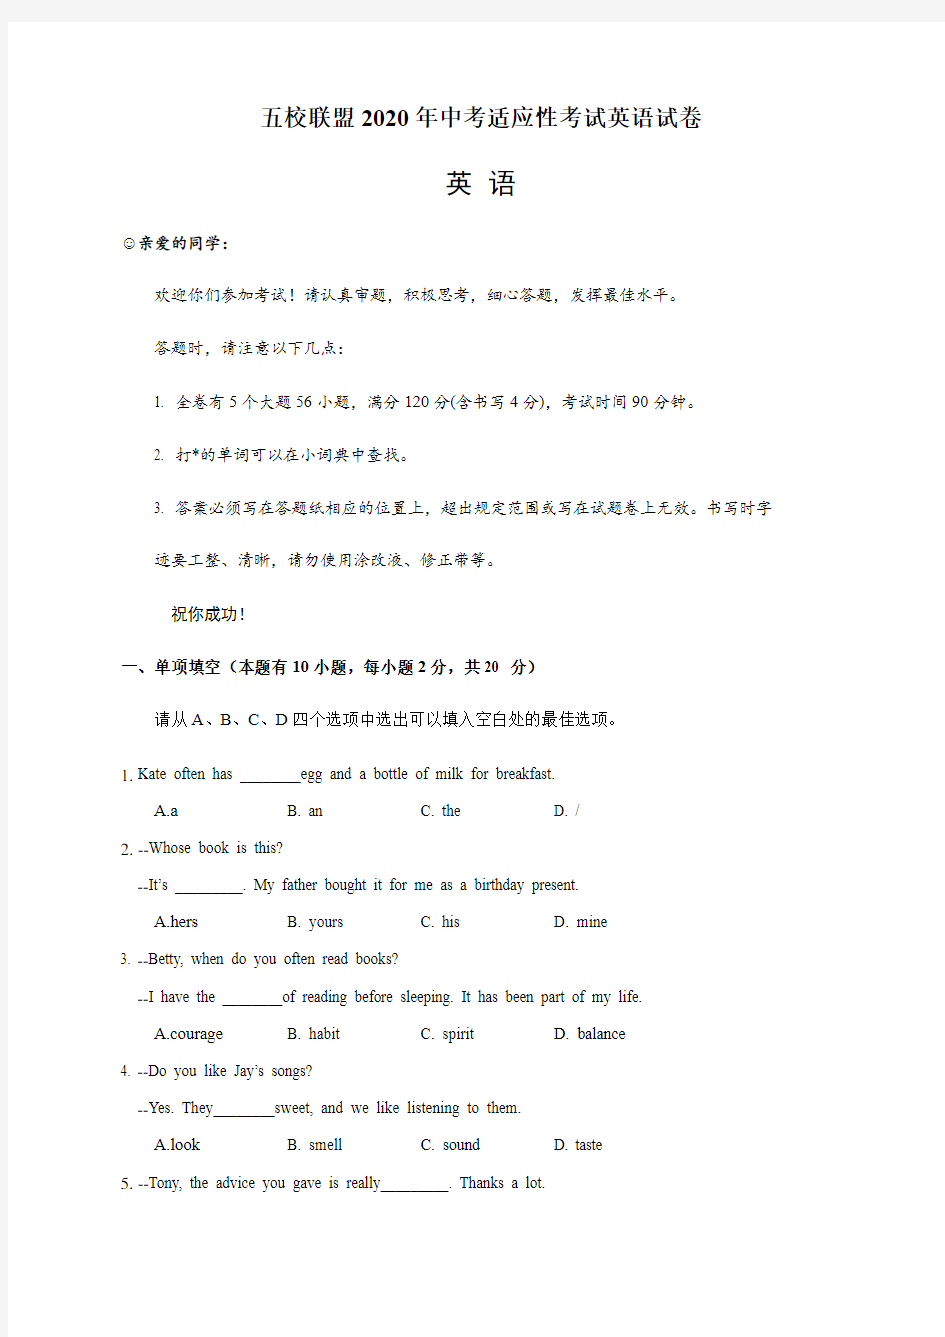 浙江省温州市五校2020届九年级中考适应性考试英语试题